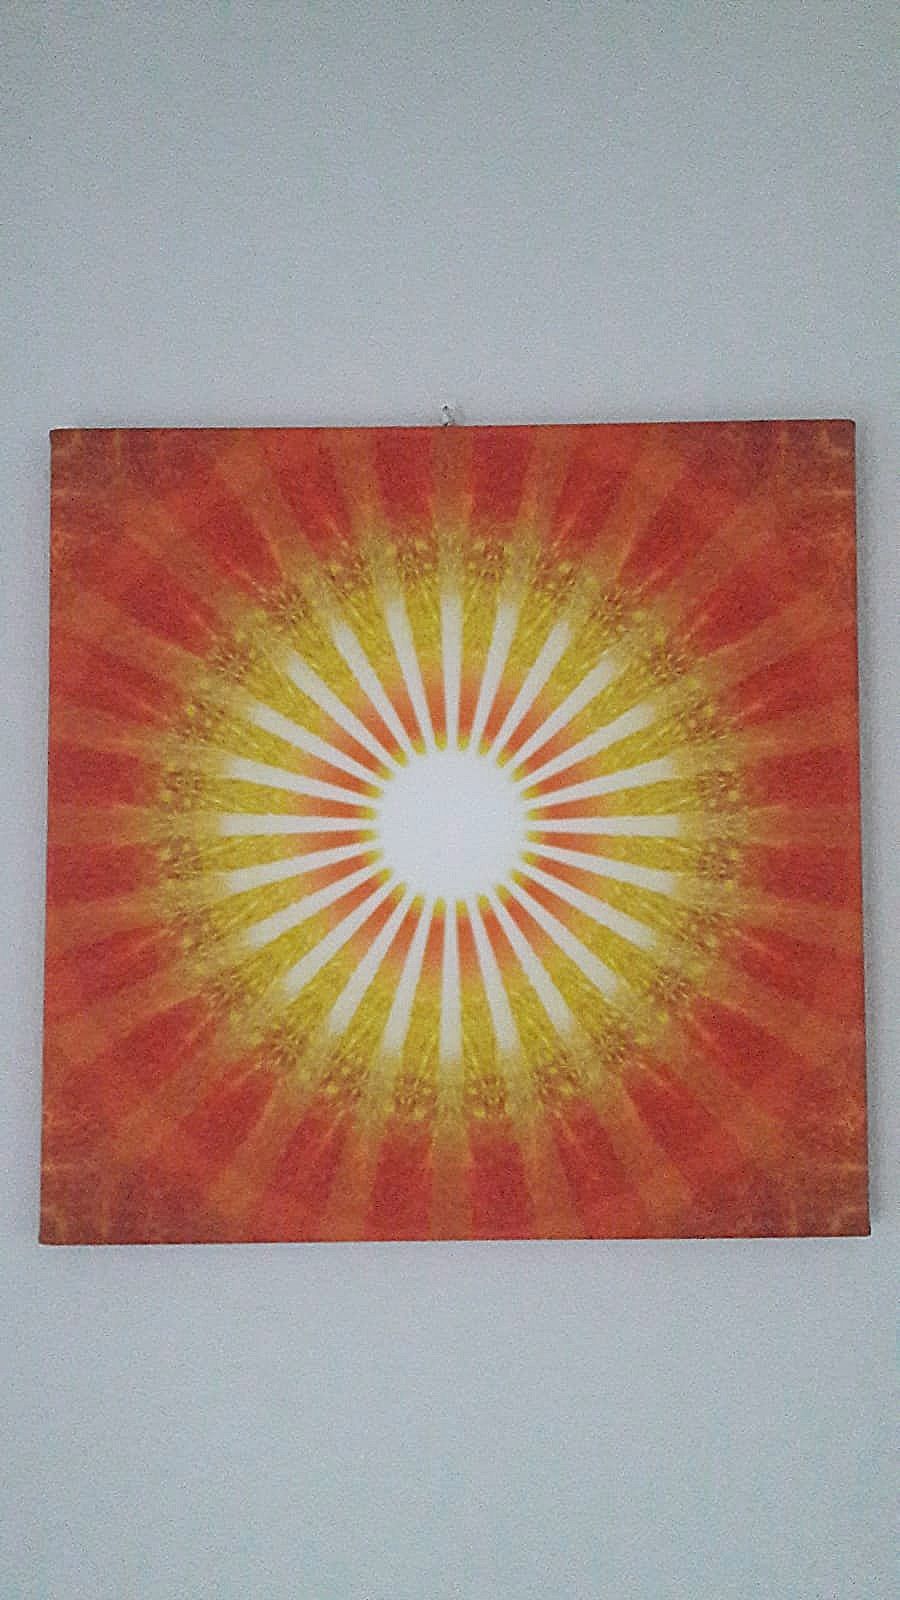 MANDALA, obraz fotografia na płótnie - słońce światło błysk symetria